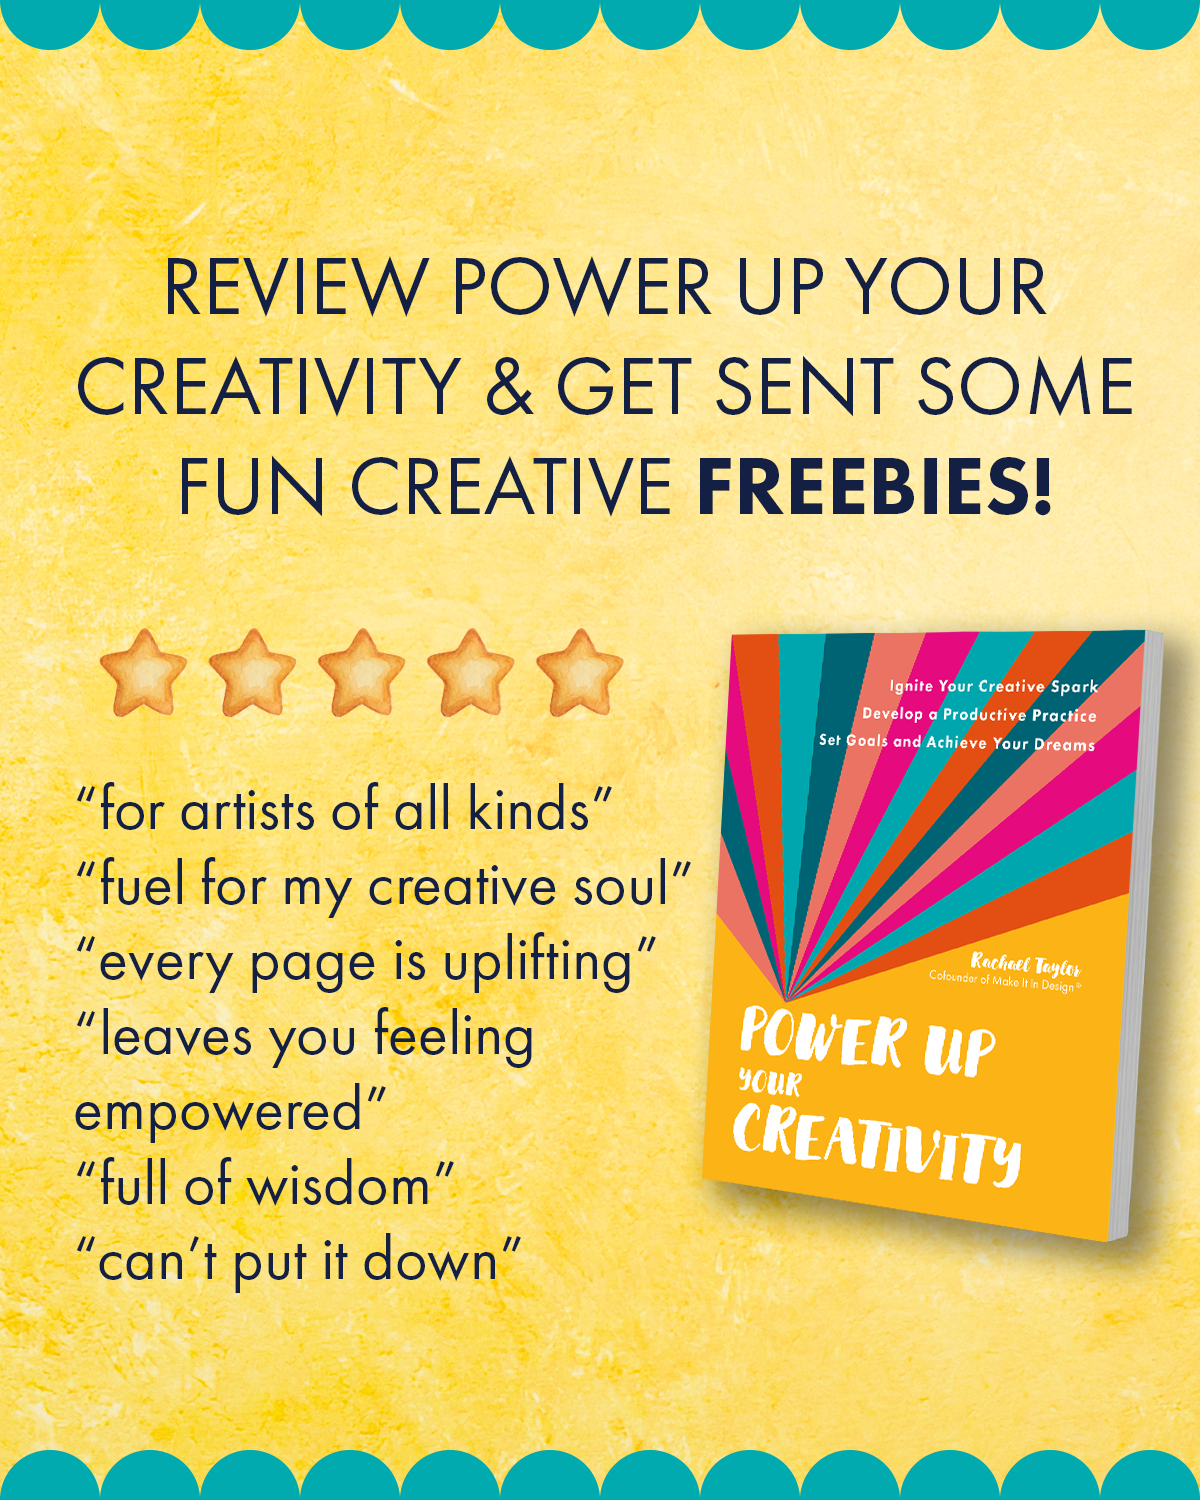 Fun creative freebies!